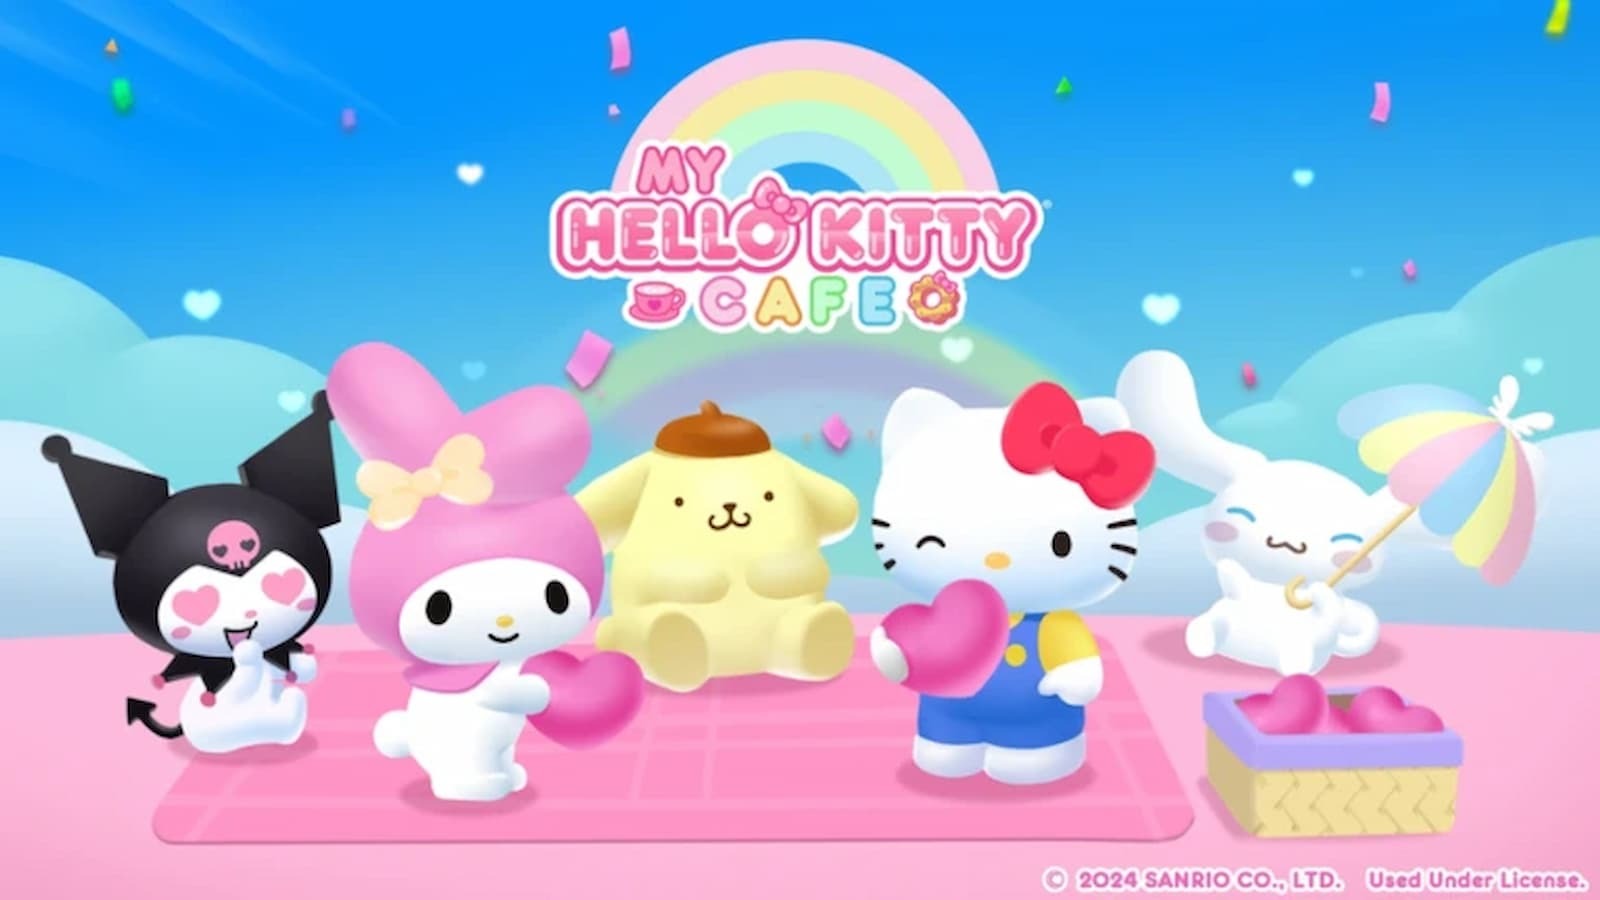 My Hello Kitty Cafe [ограниченные бесплатные коды пользовательского контента] на июнь 2024 г.